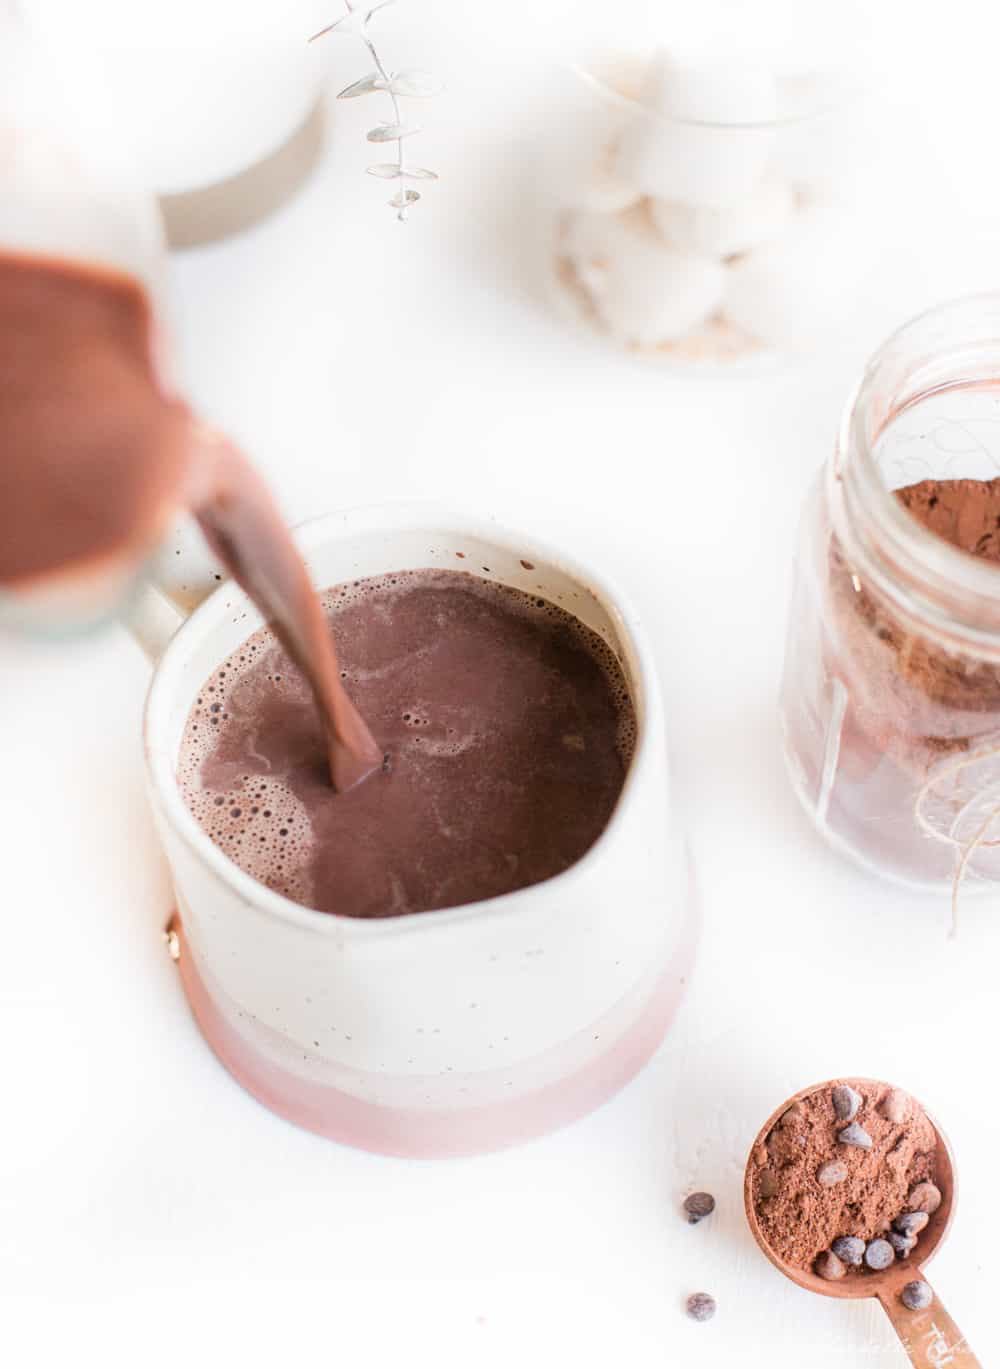 Pouring Vegan Hot Chocolate into a Mug